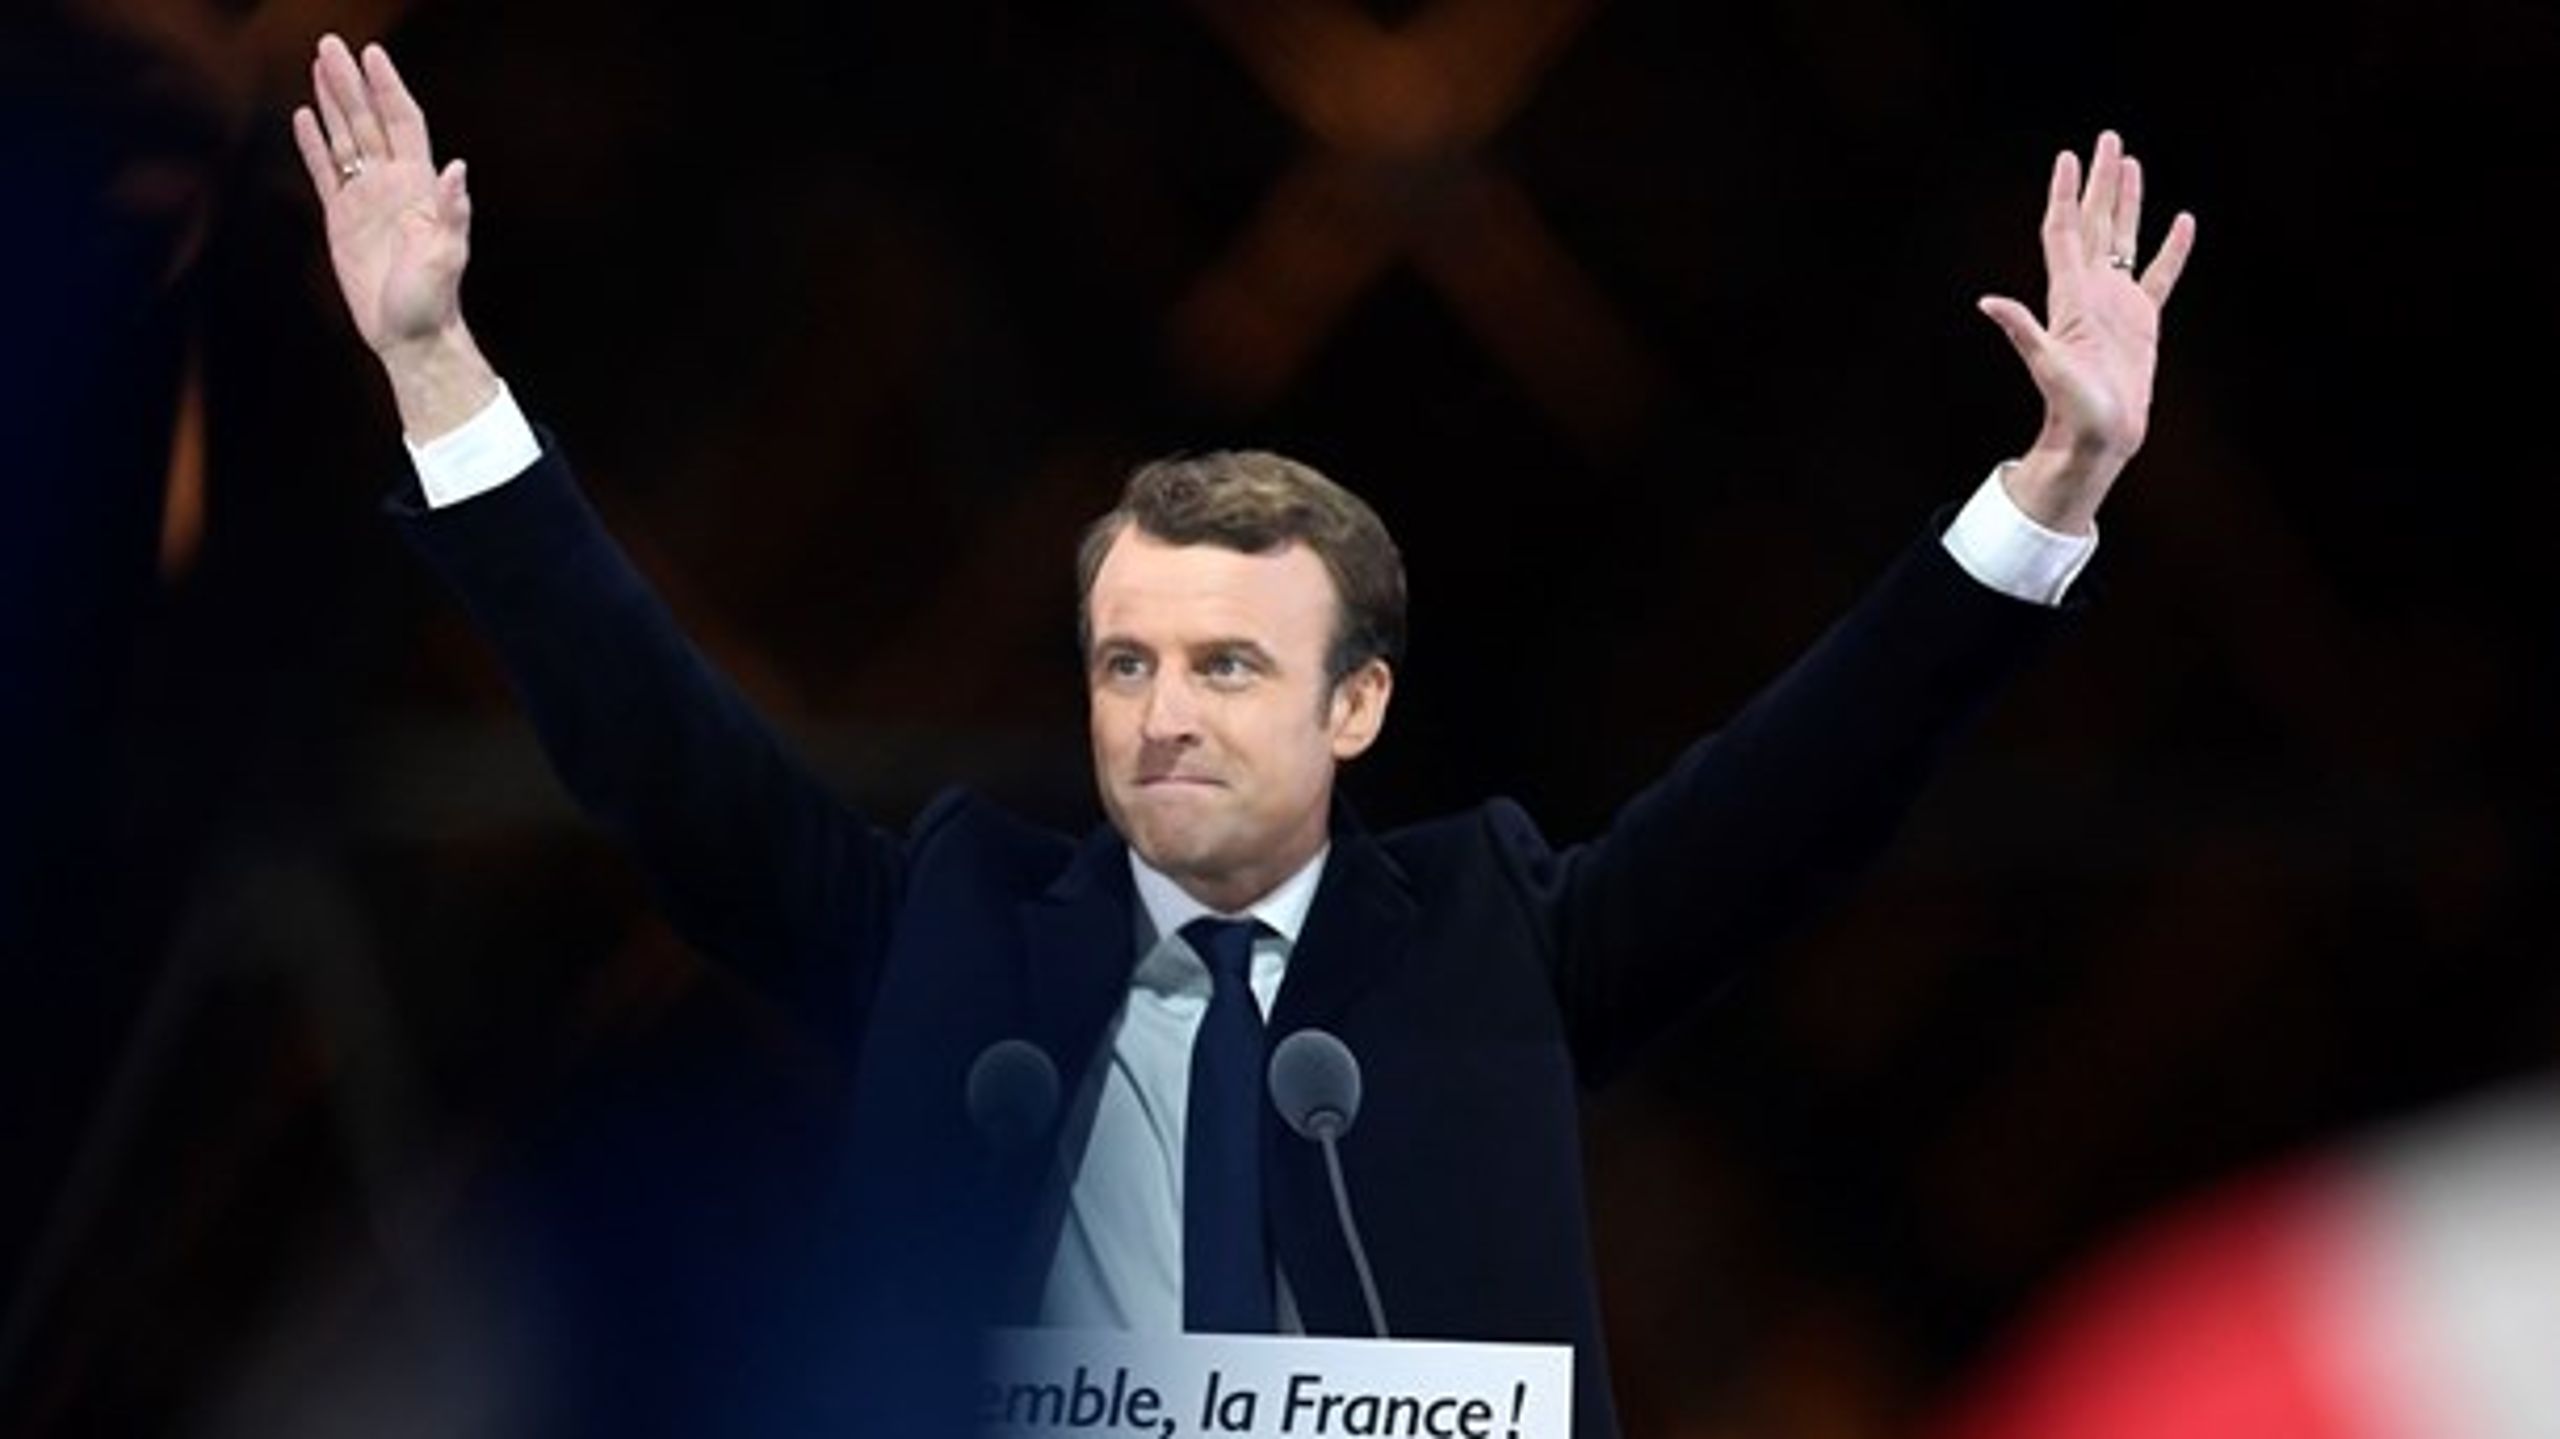 Med en overbevisende sejr bliver centrumpolitikeren Emmanuel Macron Frankrigs næste præsident.